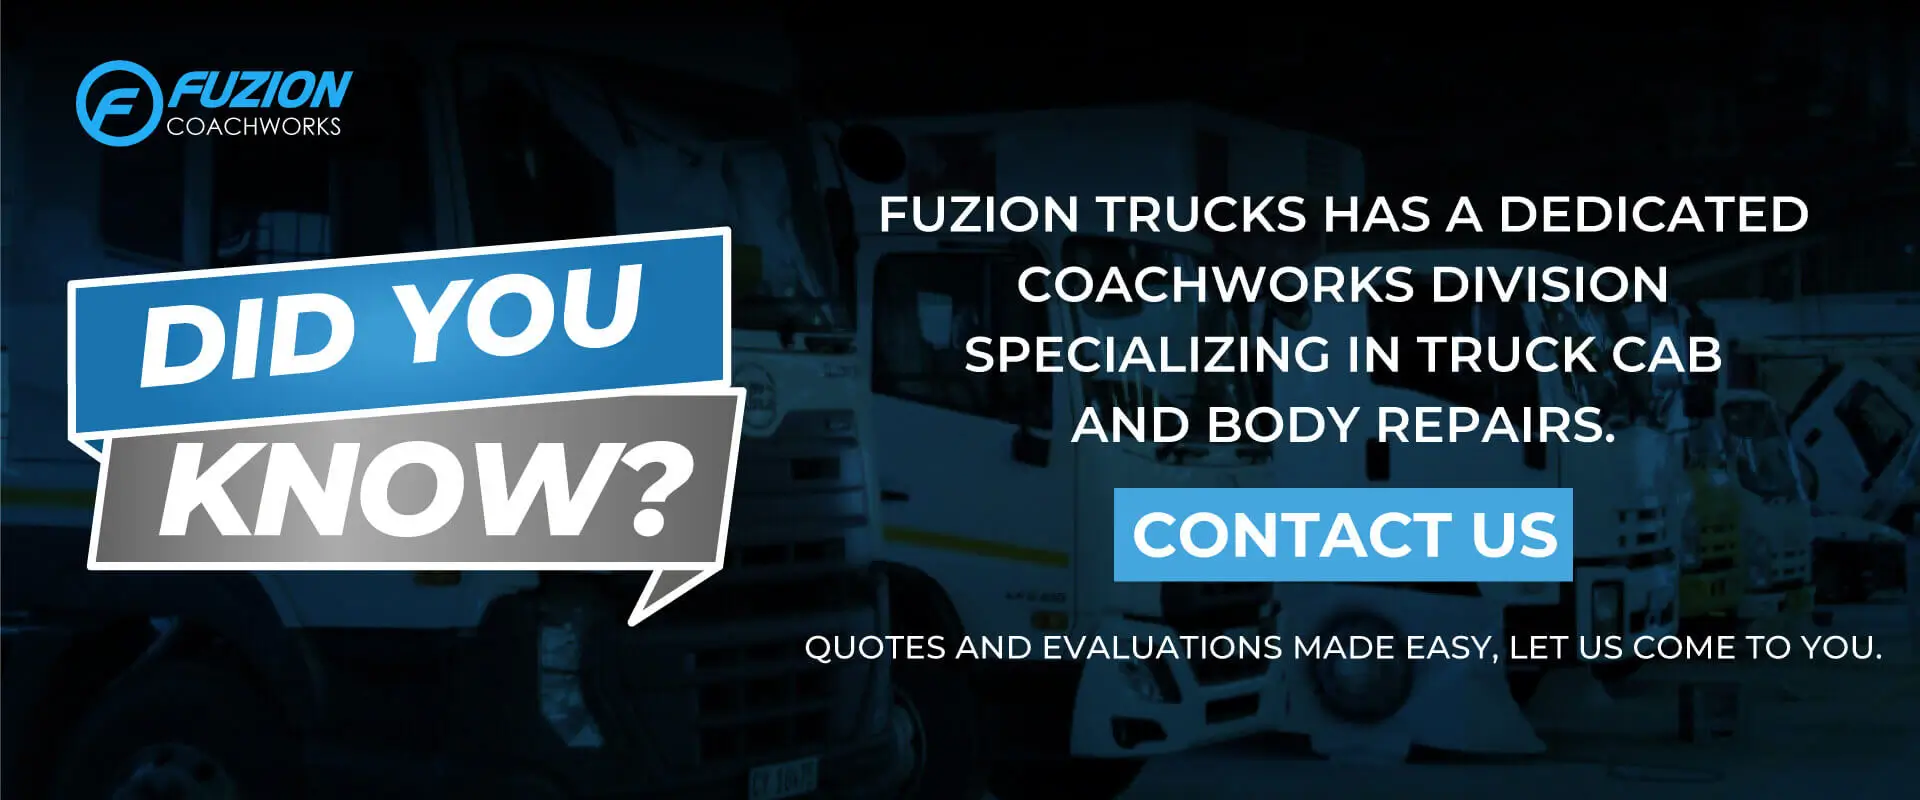 Fuzion new trucks 4